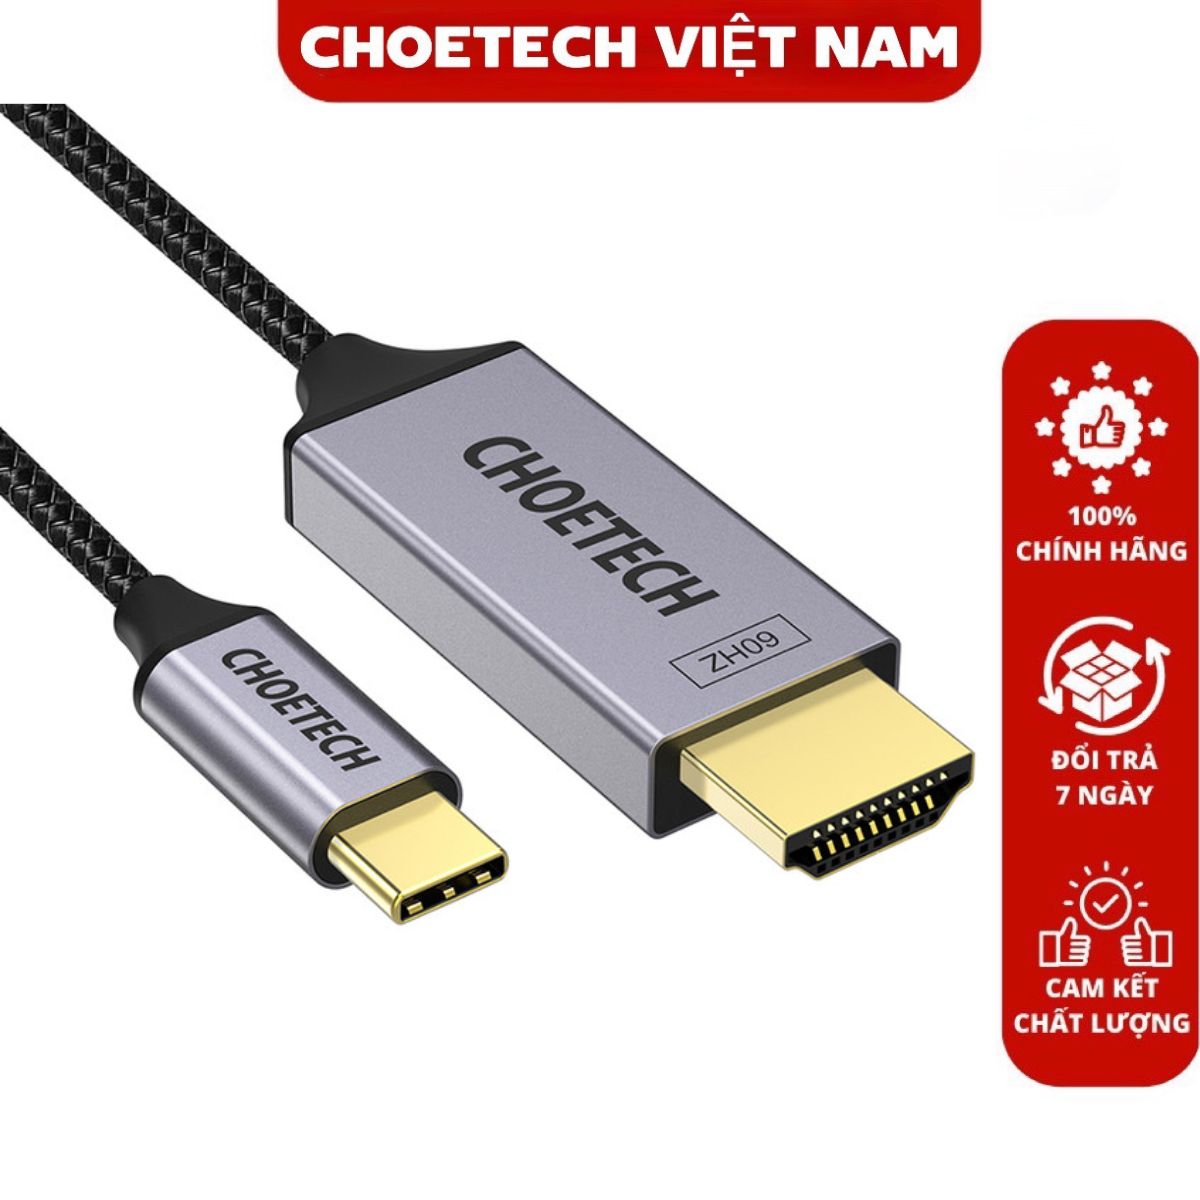 Cáp chuyển Type C sang HDMI 4K@60Hz Choetech XCH-1804 tương thích Thunderbolt 3 dài 1.8M (Hàng chính hãng)